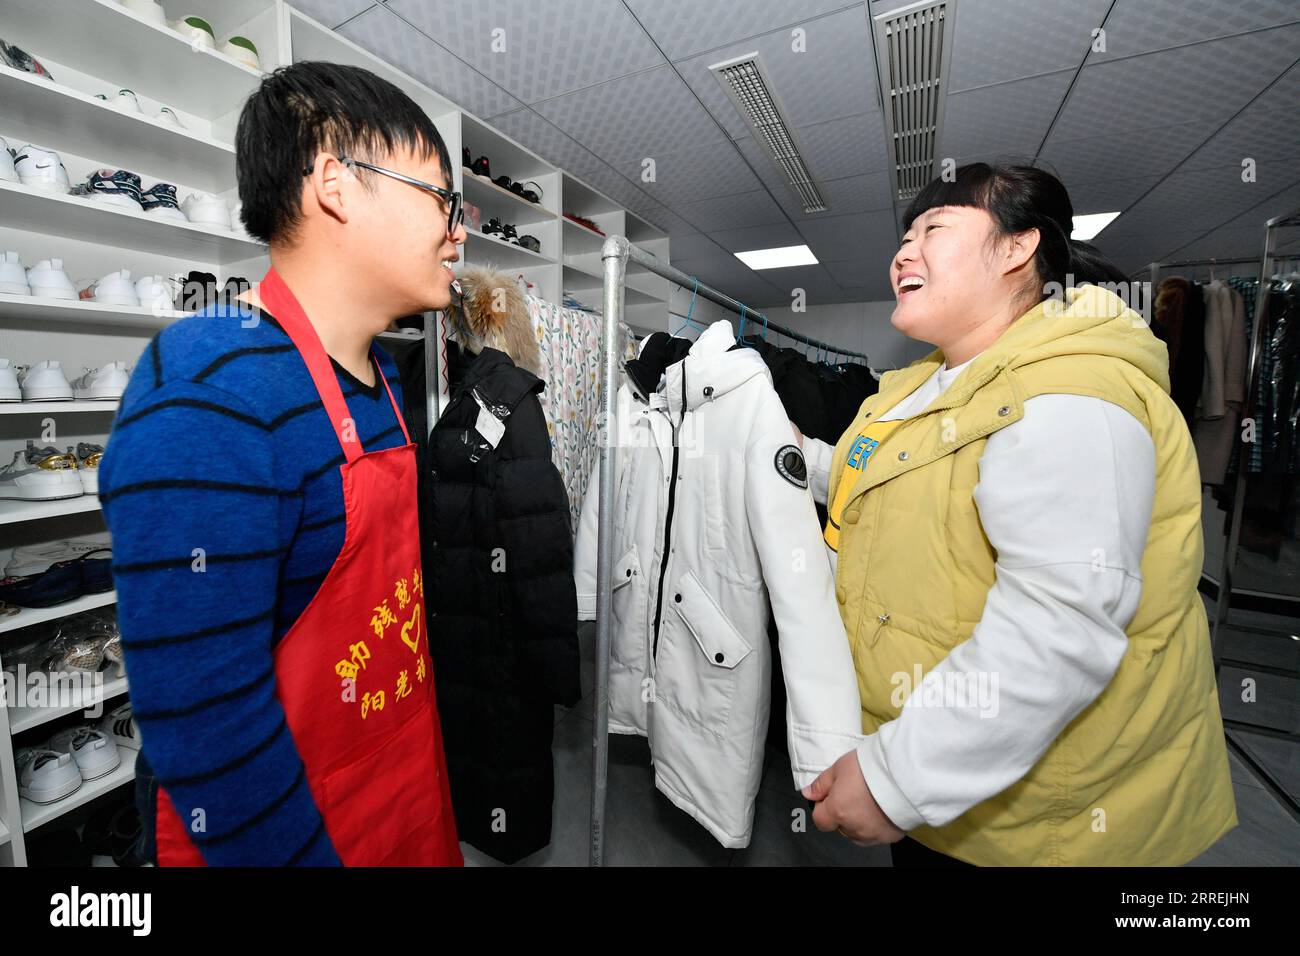 220304 -- TIANJIN, le 4 mars 2022 -- Tian Lichao R s'entretient avec un jeune handicapé dans une base d'emploi pour handicapés dans le district de Baodi, dans le nord de la Chine, Tianjin, le 1 mars 2022. Dans un complexe spécial de la ville de Shigezhuang, district de Baodi, 49 jeunes handicapés âgés en moyenne de moins de 23 ans travaillent et vivent ici. Le retard mental, la déficience visuelle et d'autres handicaps les ont autrefois rendus inférieurs. Cependant, avec l'aide de Tian Lichao, ils deviennent de plus en plus confiants. Un jour en 2016, Tian Lichao a rencontré une fille perdue avec un handicap intellectuel sur la route. Après avoir parlé avec le princip Banque D'Images